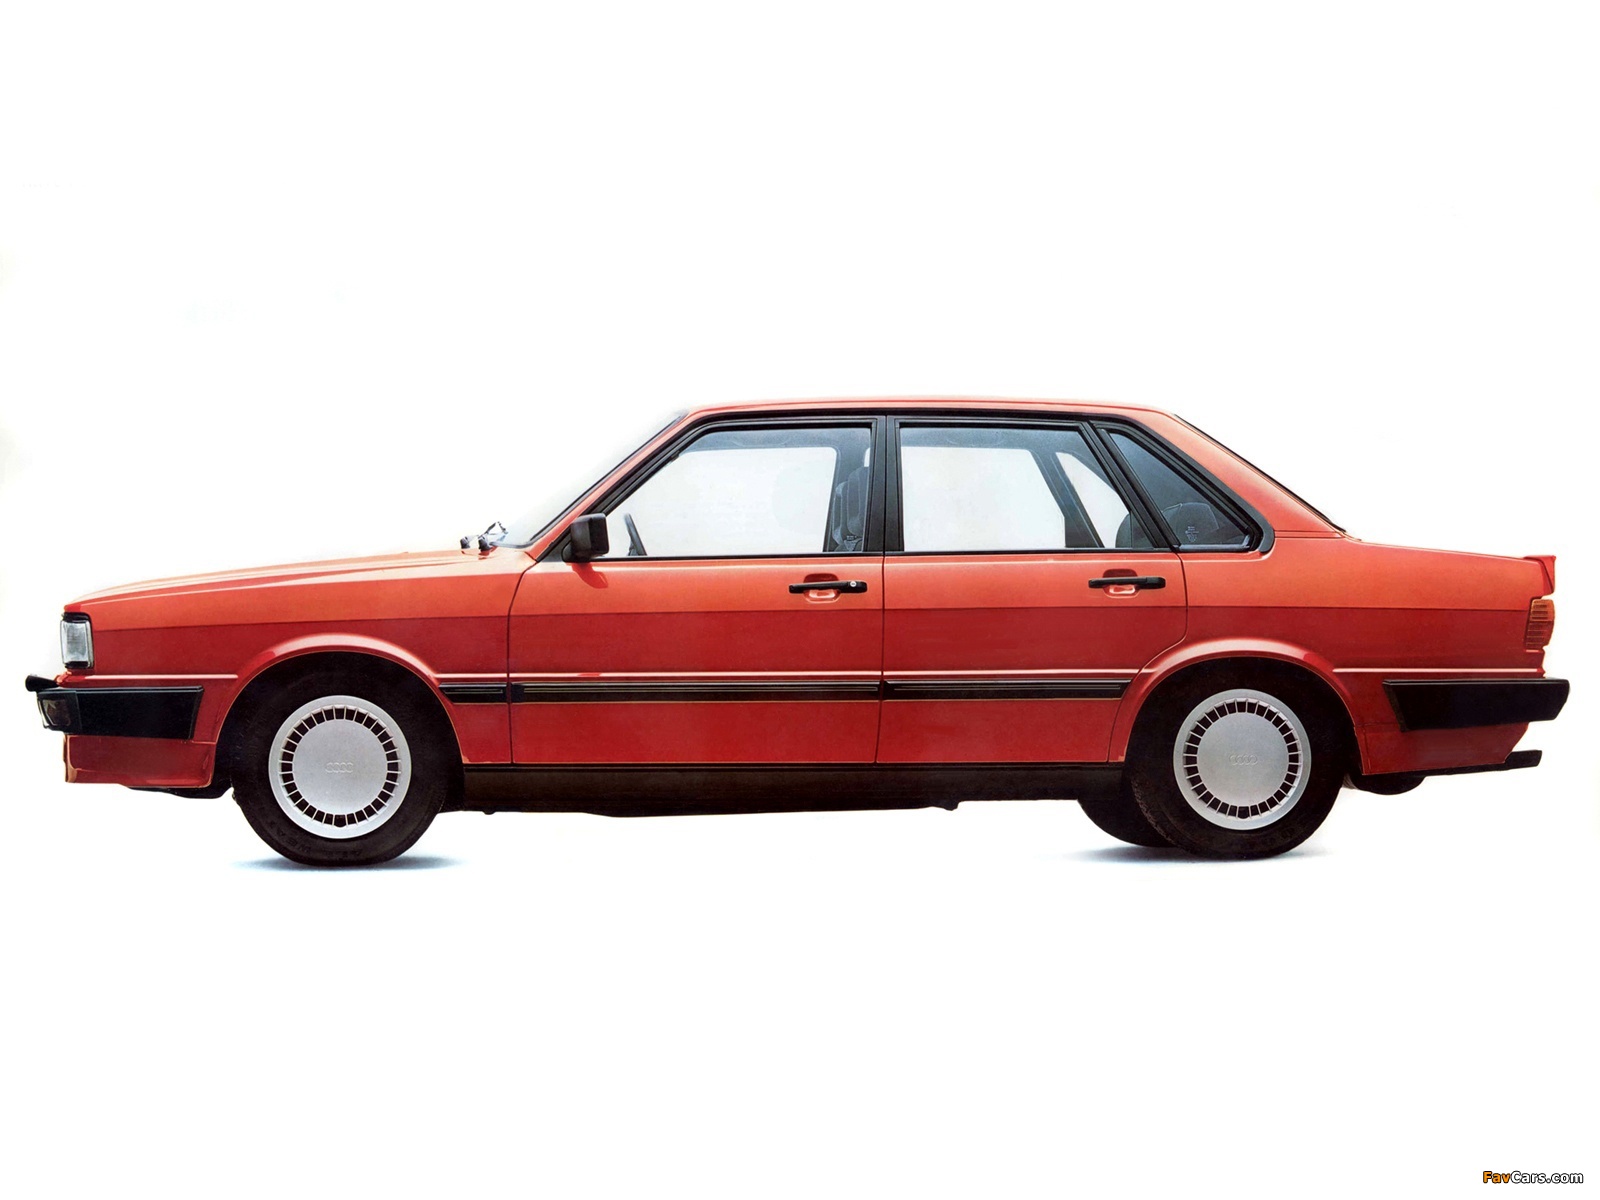 Audi 80 quattro B2 (1982-1984) photos (1600x1200)